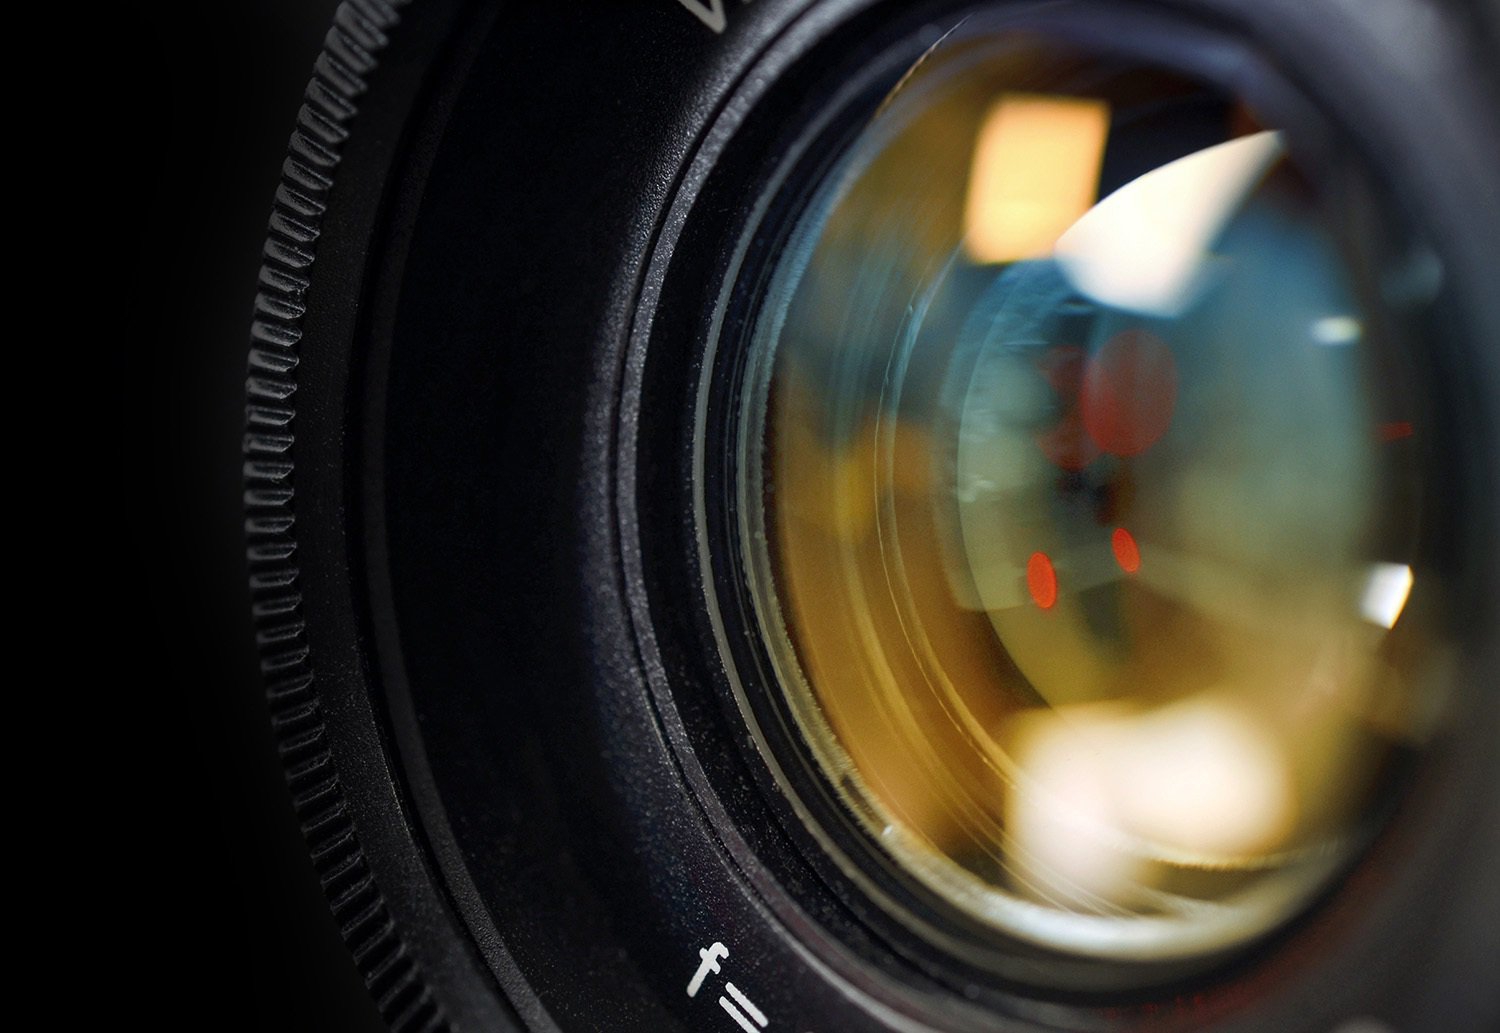 Close-up of a camera lens